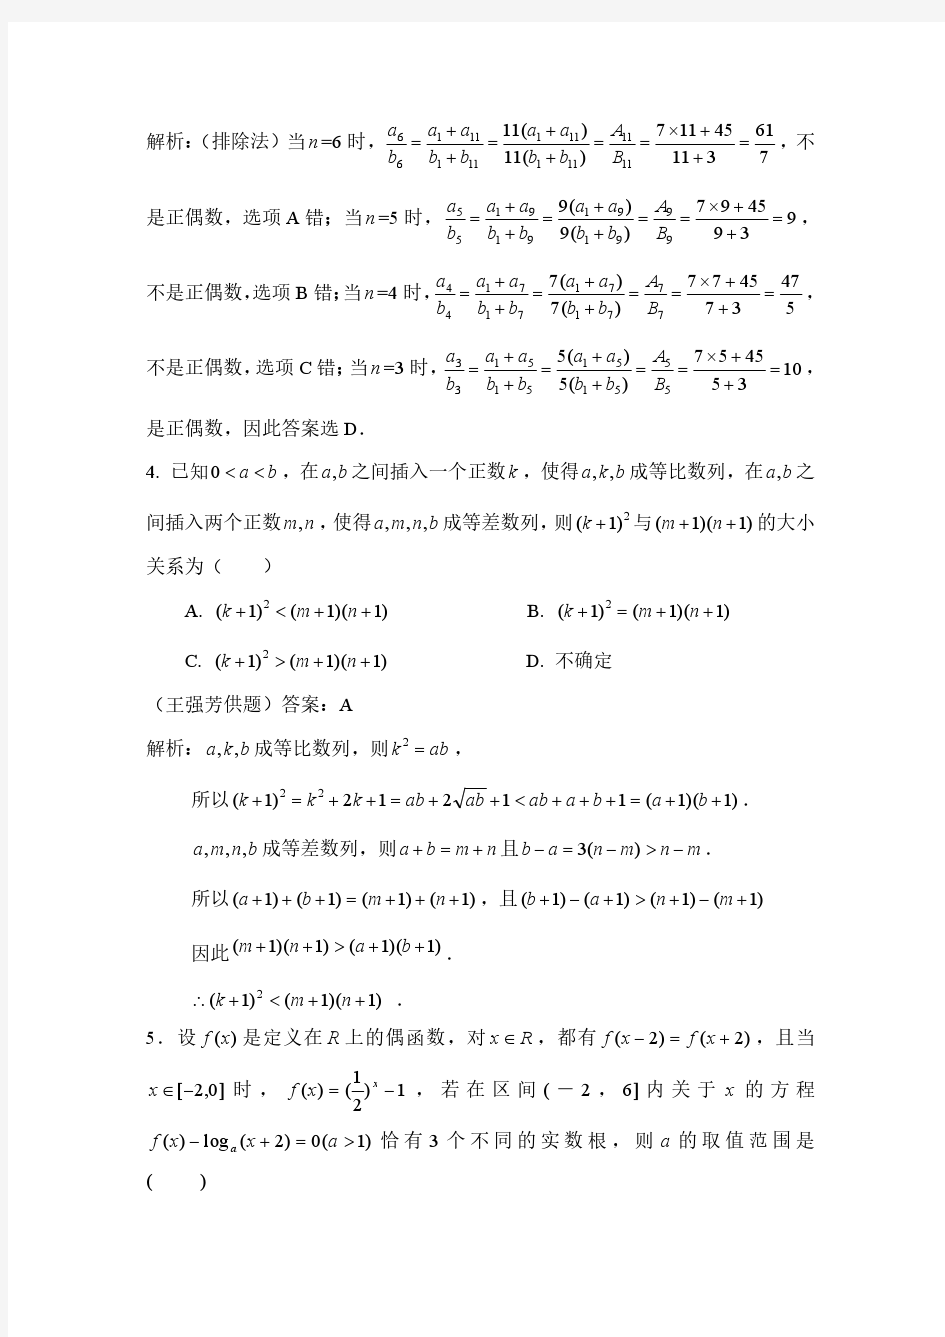 2017年广西创新杯数学竞赛高二年级决赛试题答案